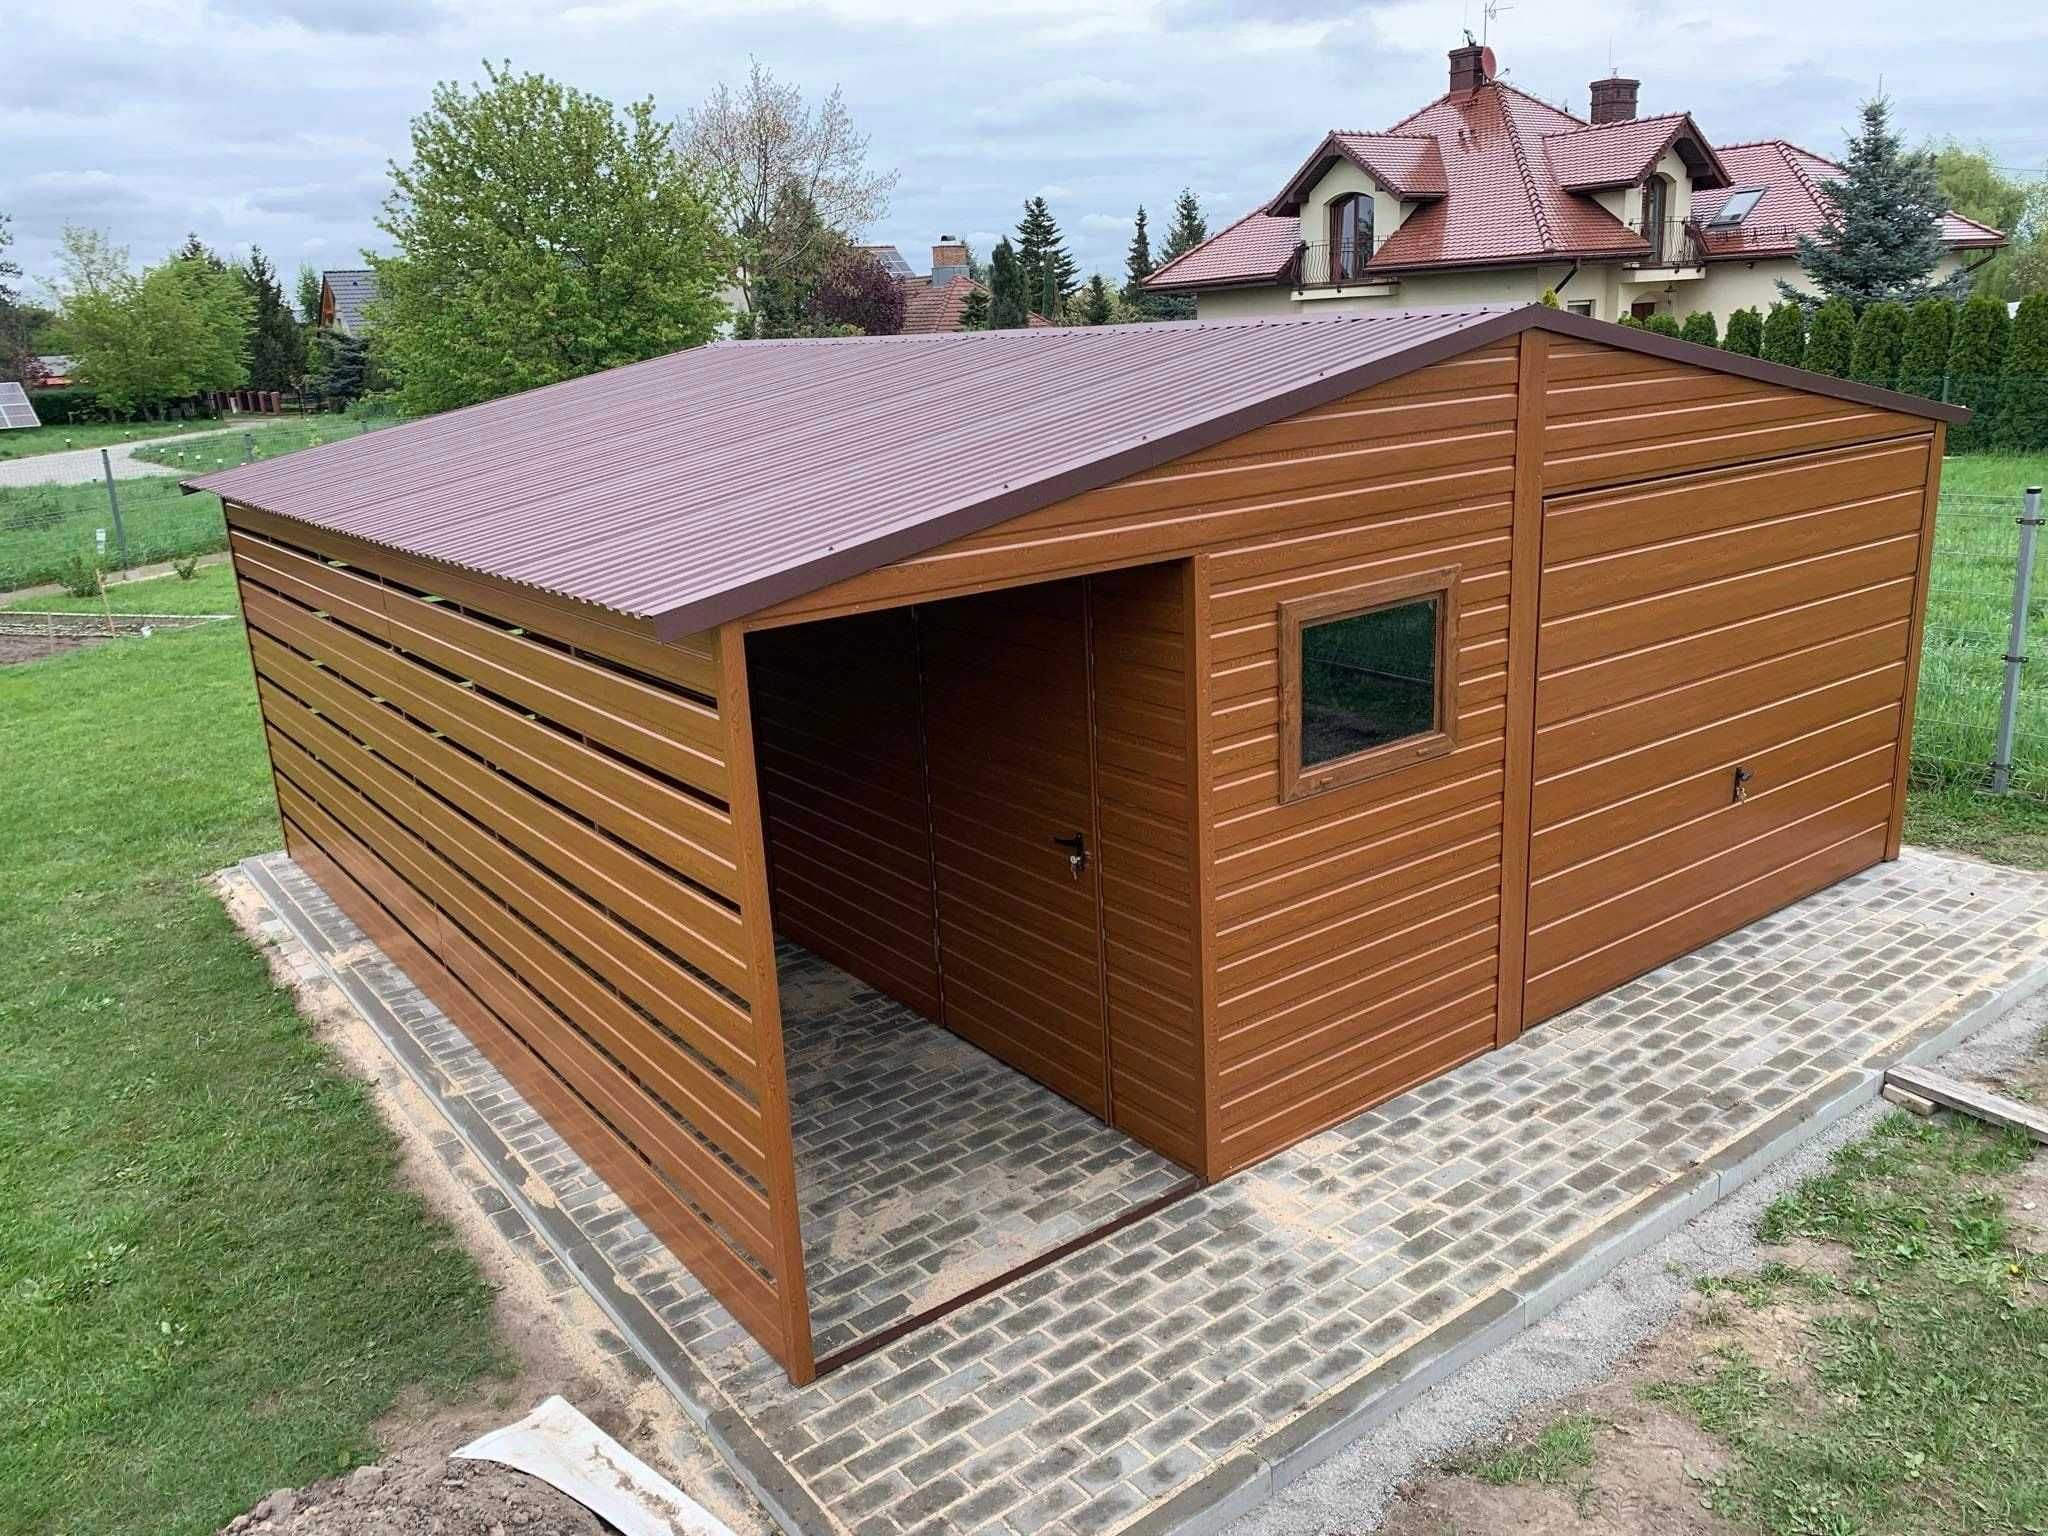 Garaże,garaż blaszany 6x5.6x6 wzmacniany struktura drewna PROMOCJA